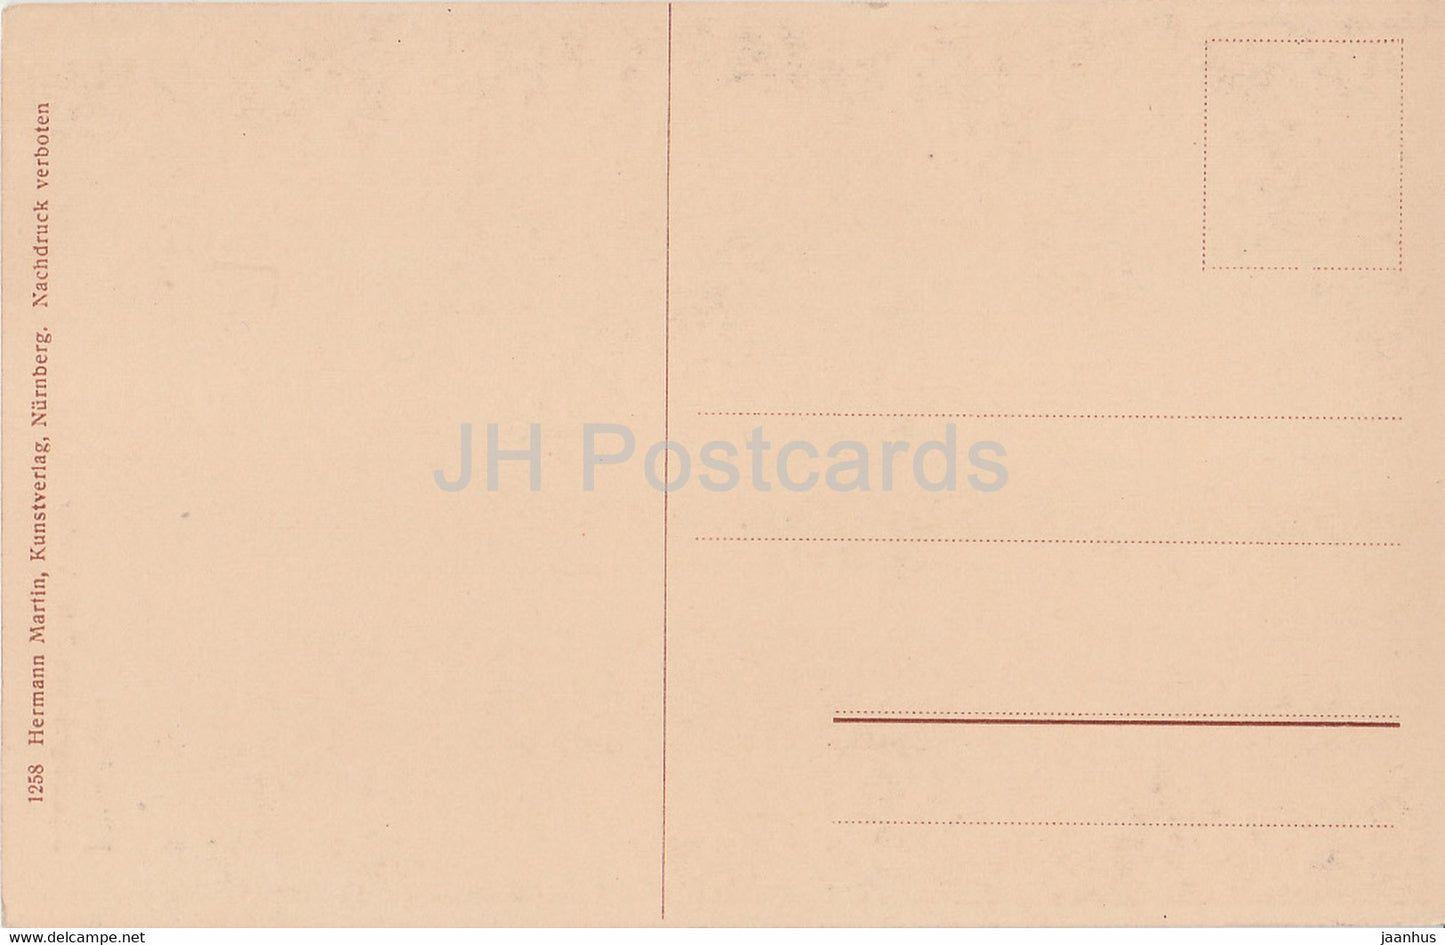 Nurnberg - Sebaldusgrab von Peter Vischer - old postcard - Germany - unused